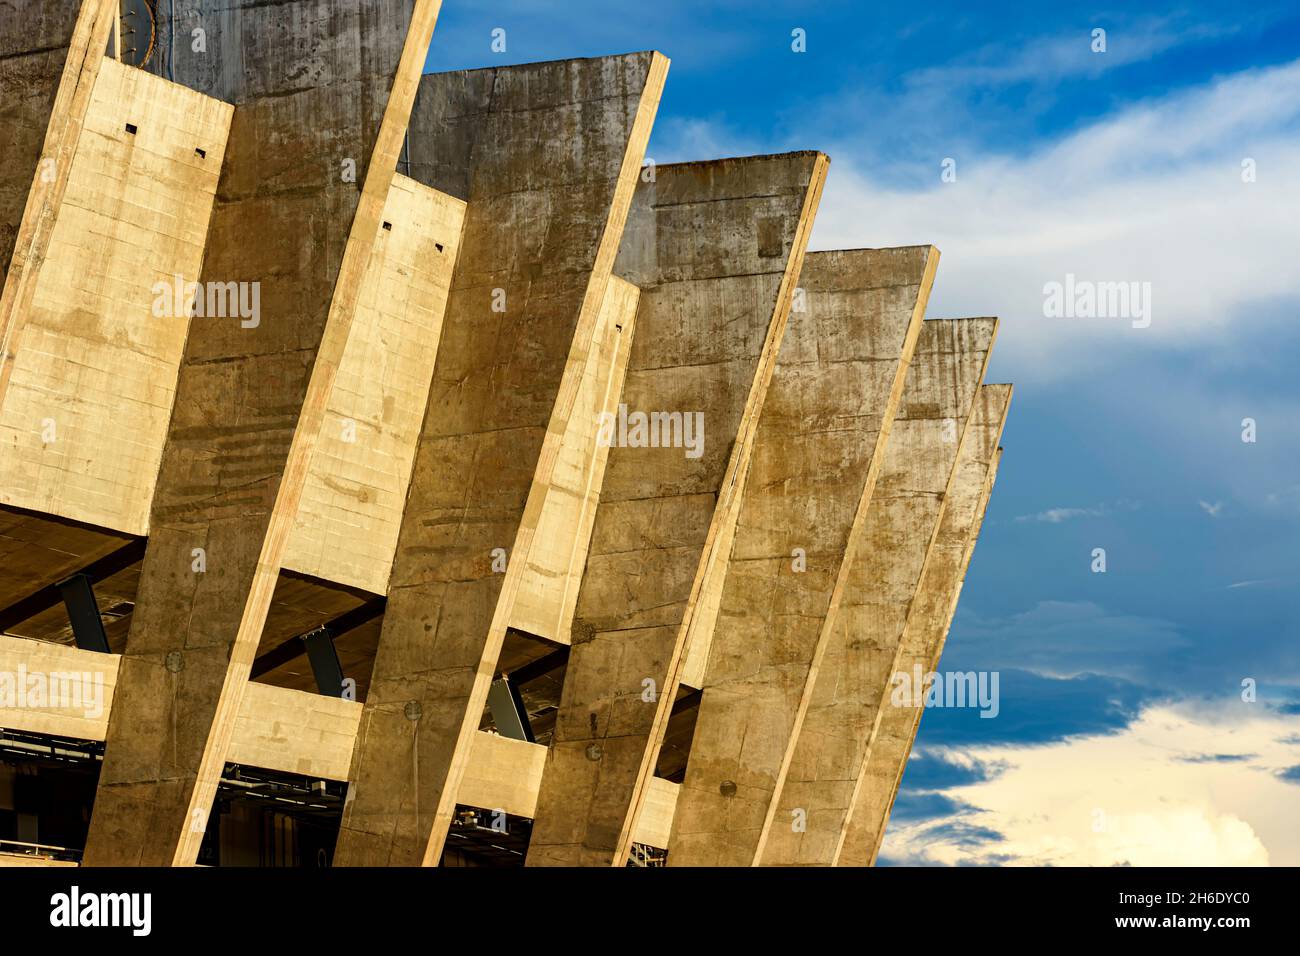 Dettaglio delle colonne del famoso stadio Mineirao, uno dei templi del calcio brasiliano nella città di Belo Horizonte, Minas Gerais Foto Stock